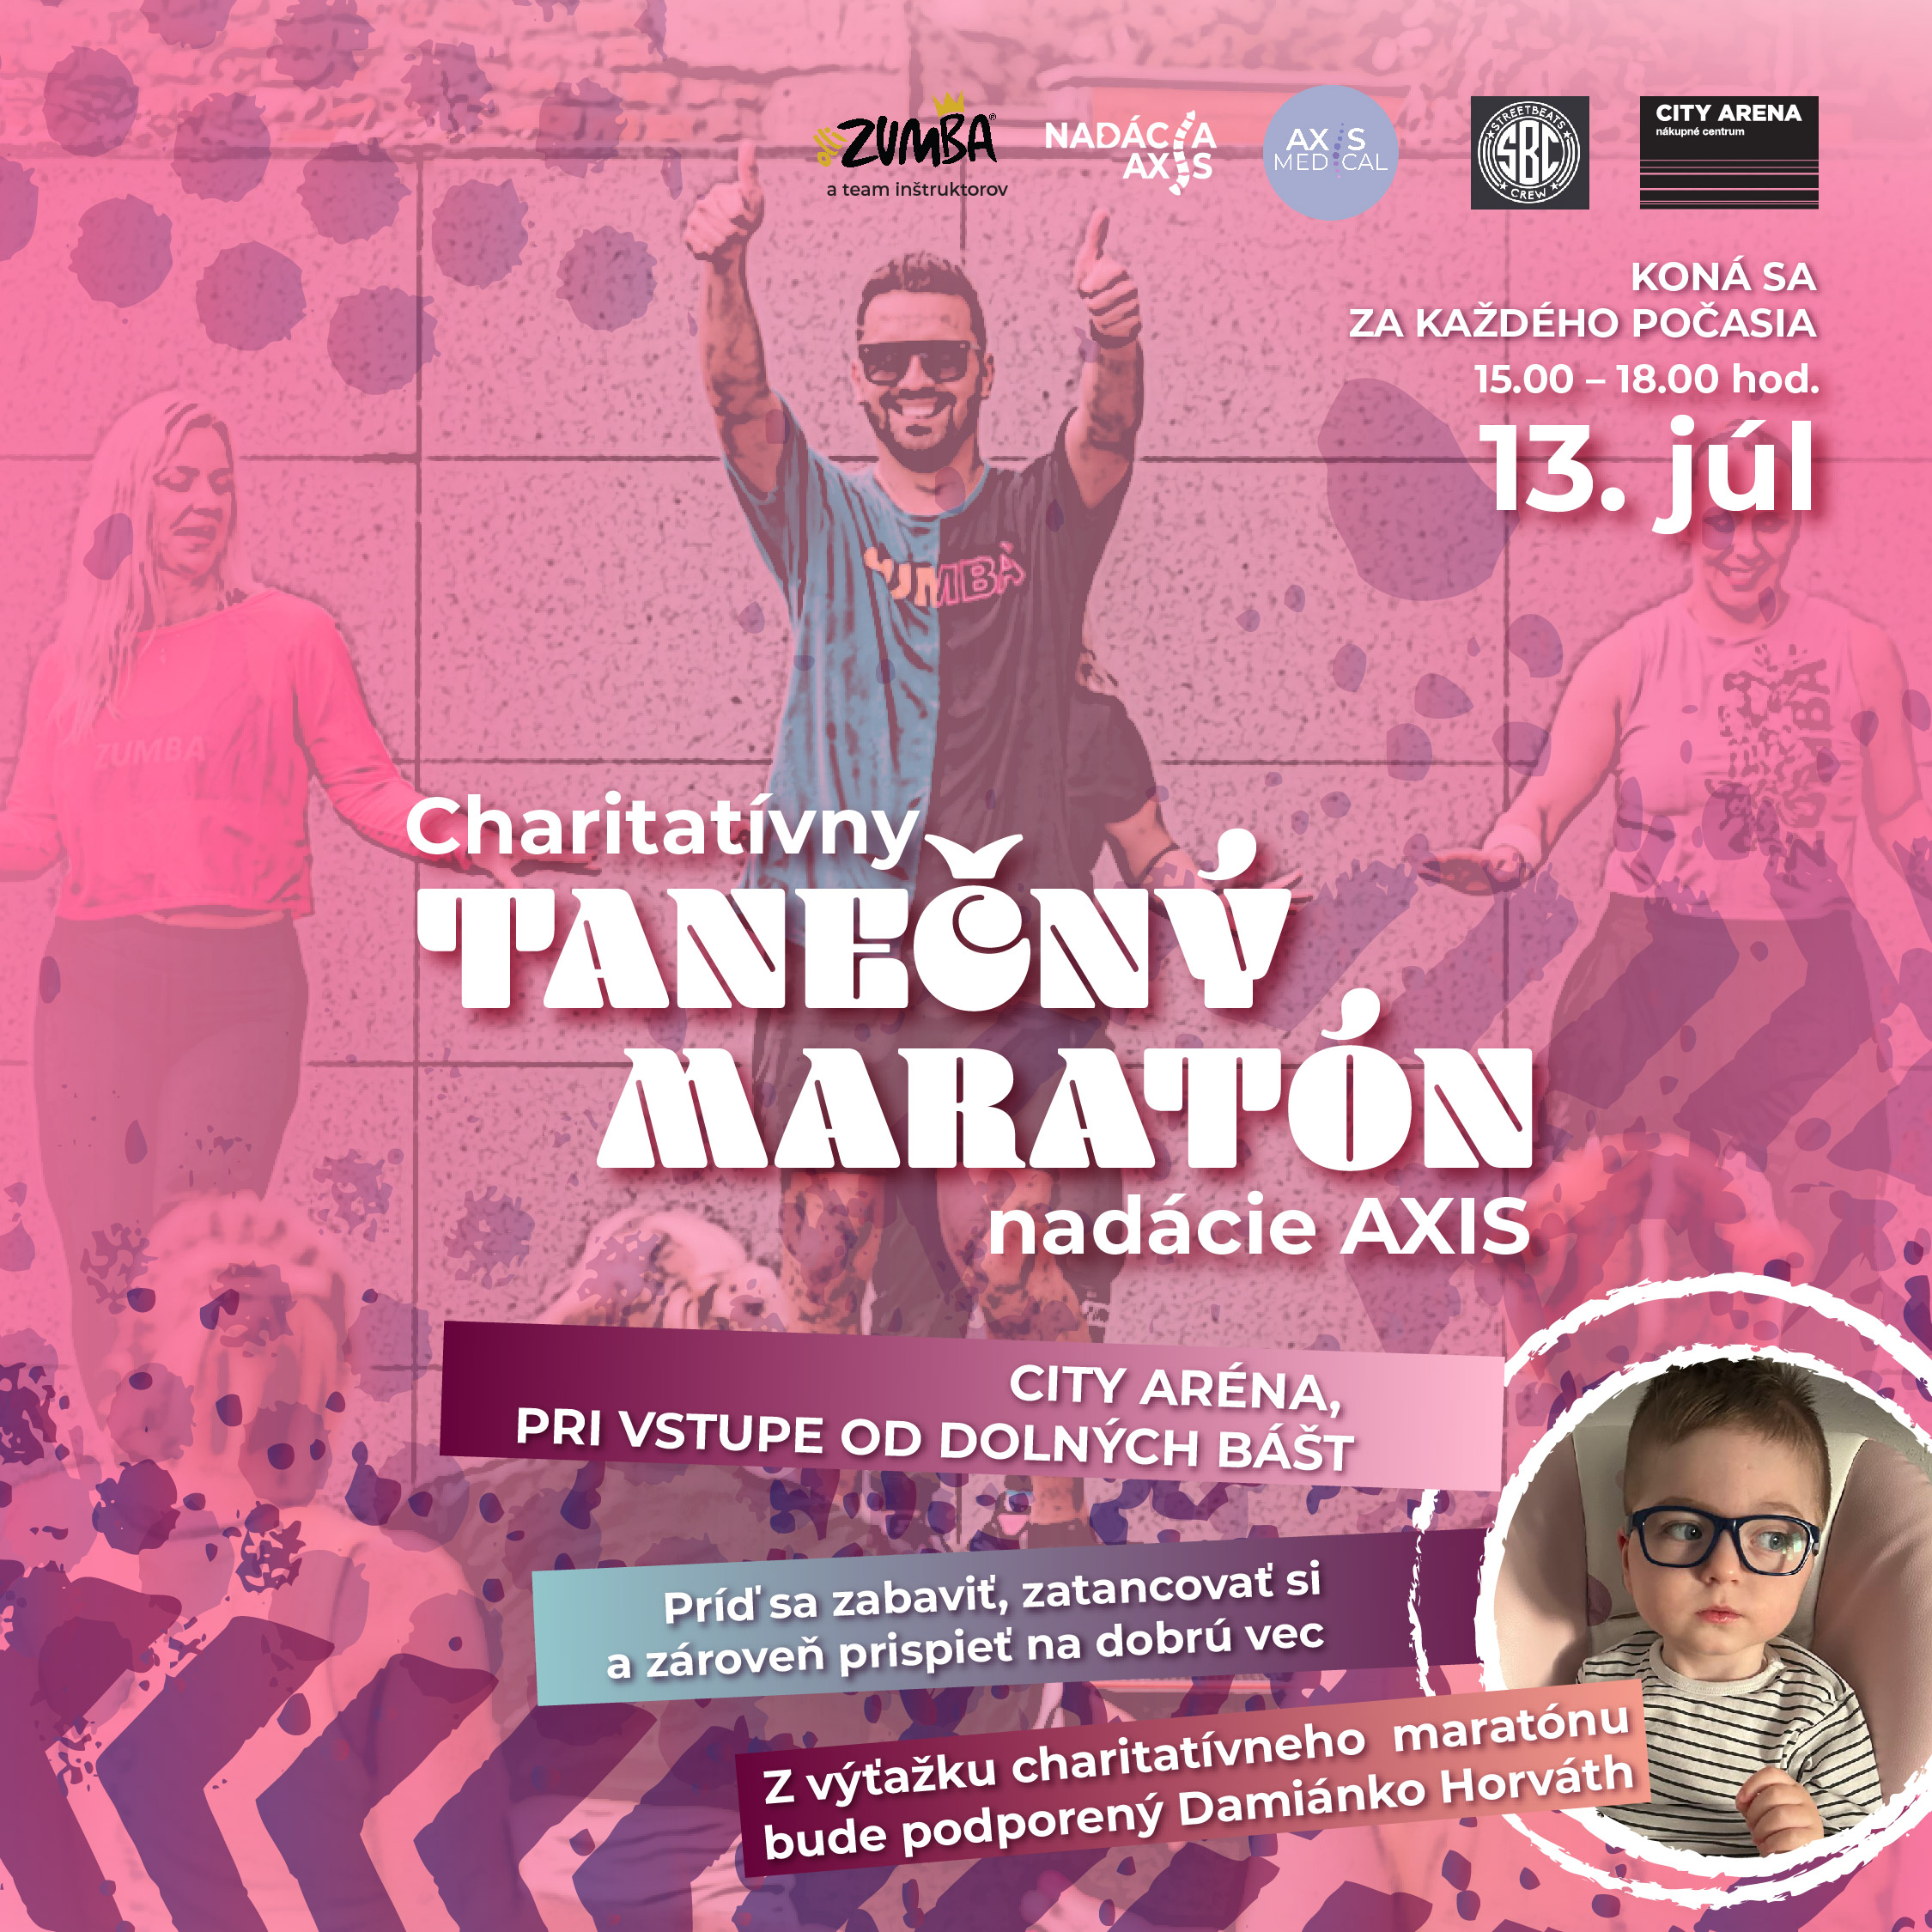 202406 Tanecny maraton-POST